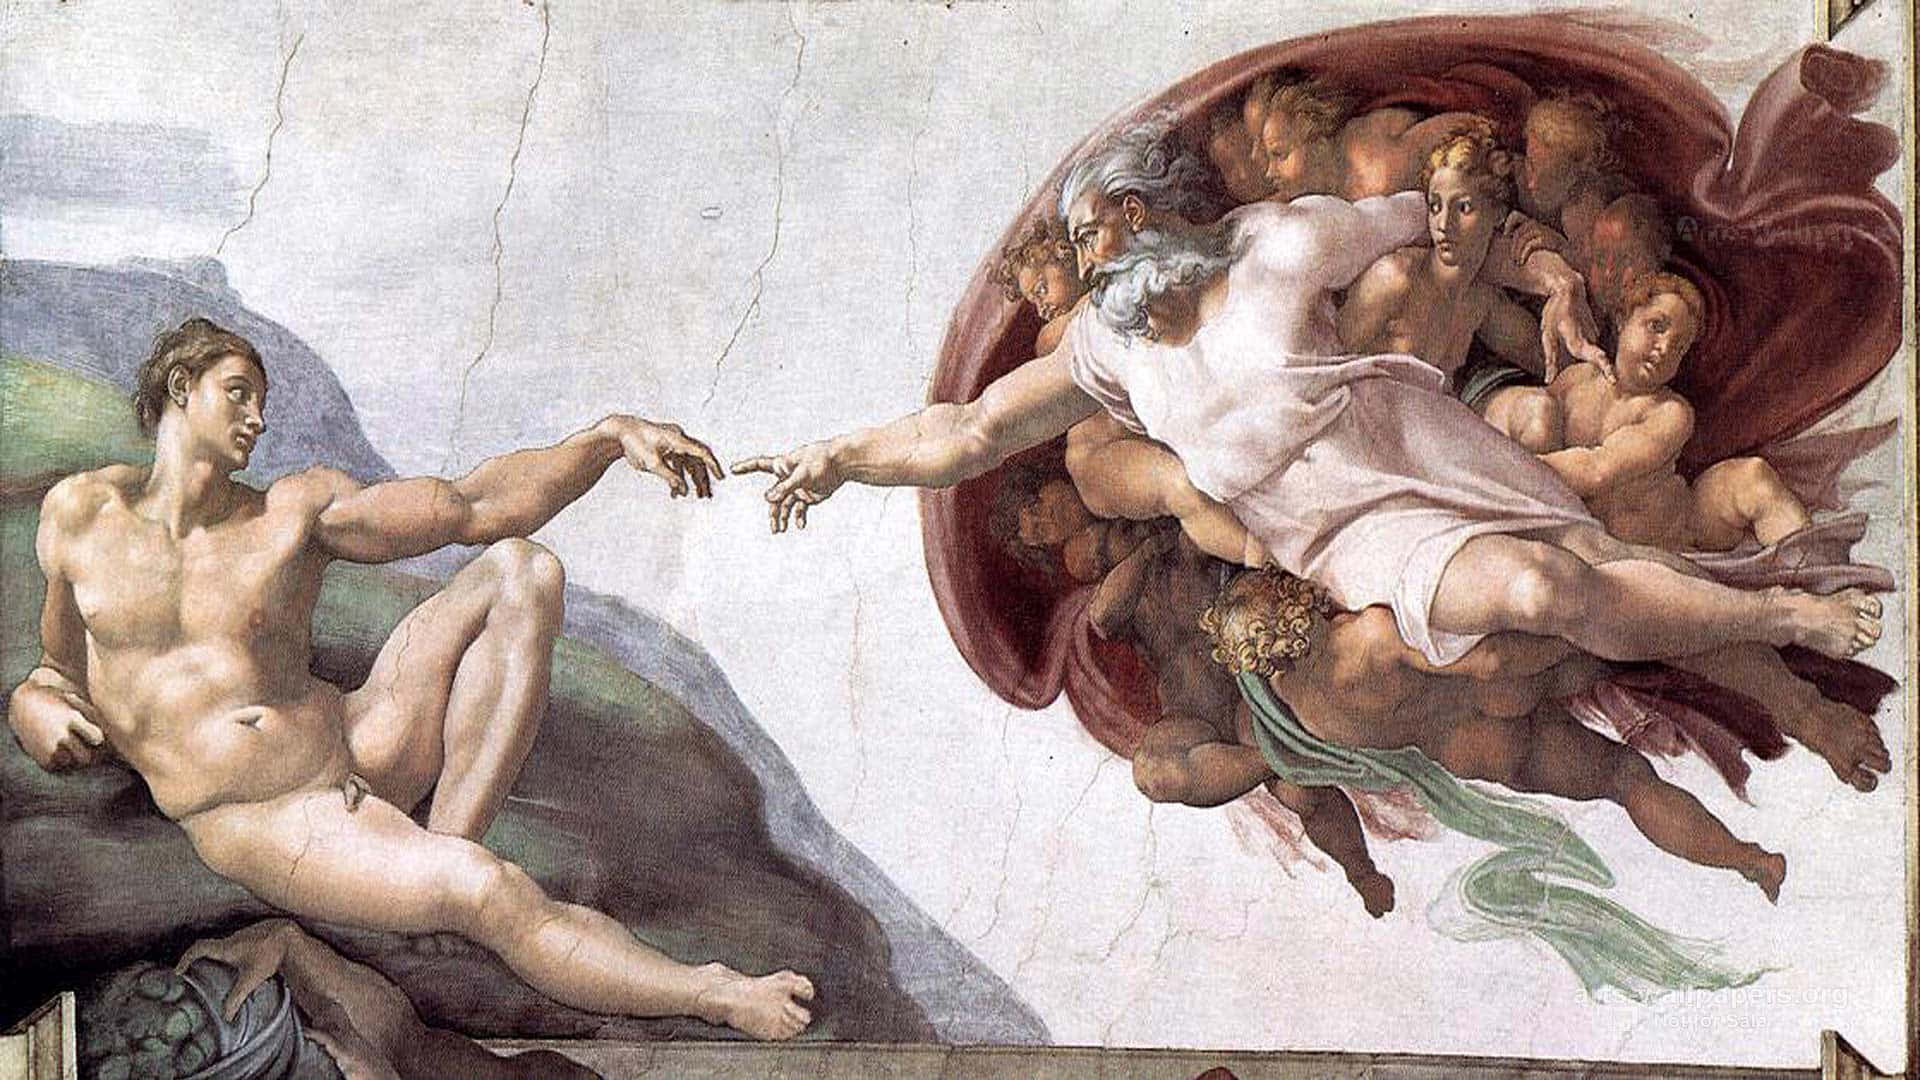 Michelangelosikonische Erschaffung Adams, Derzeit In Restaurierung Für Zukünftige Generationen. Wallpaper